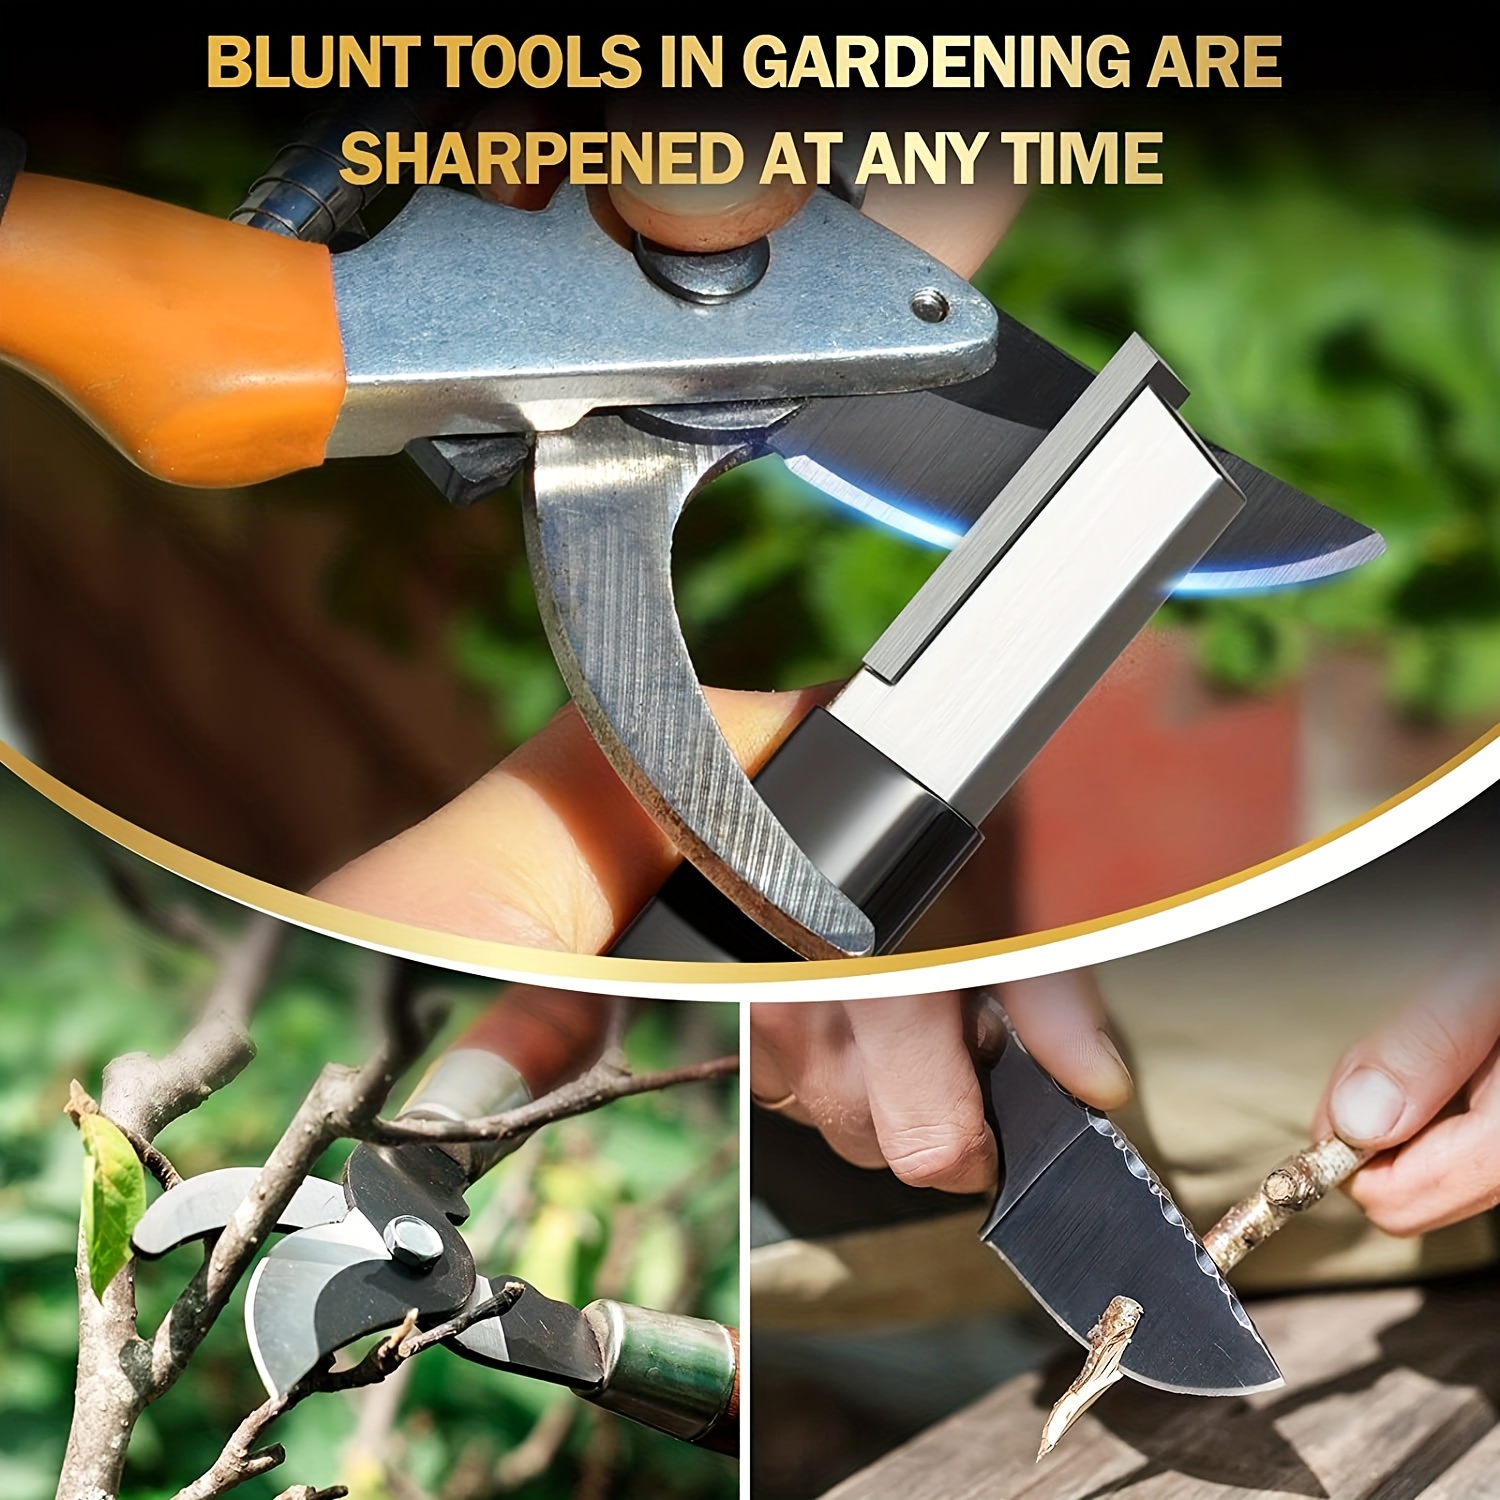 How to Sharpen Pruner Blades with a Carbide Sharpener - Gardening